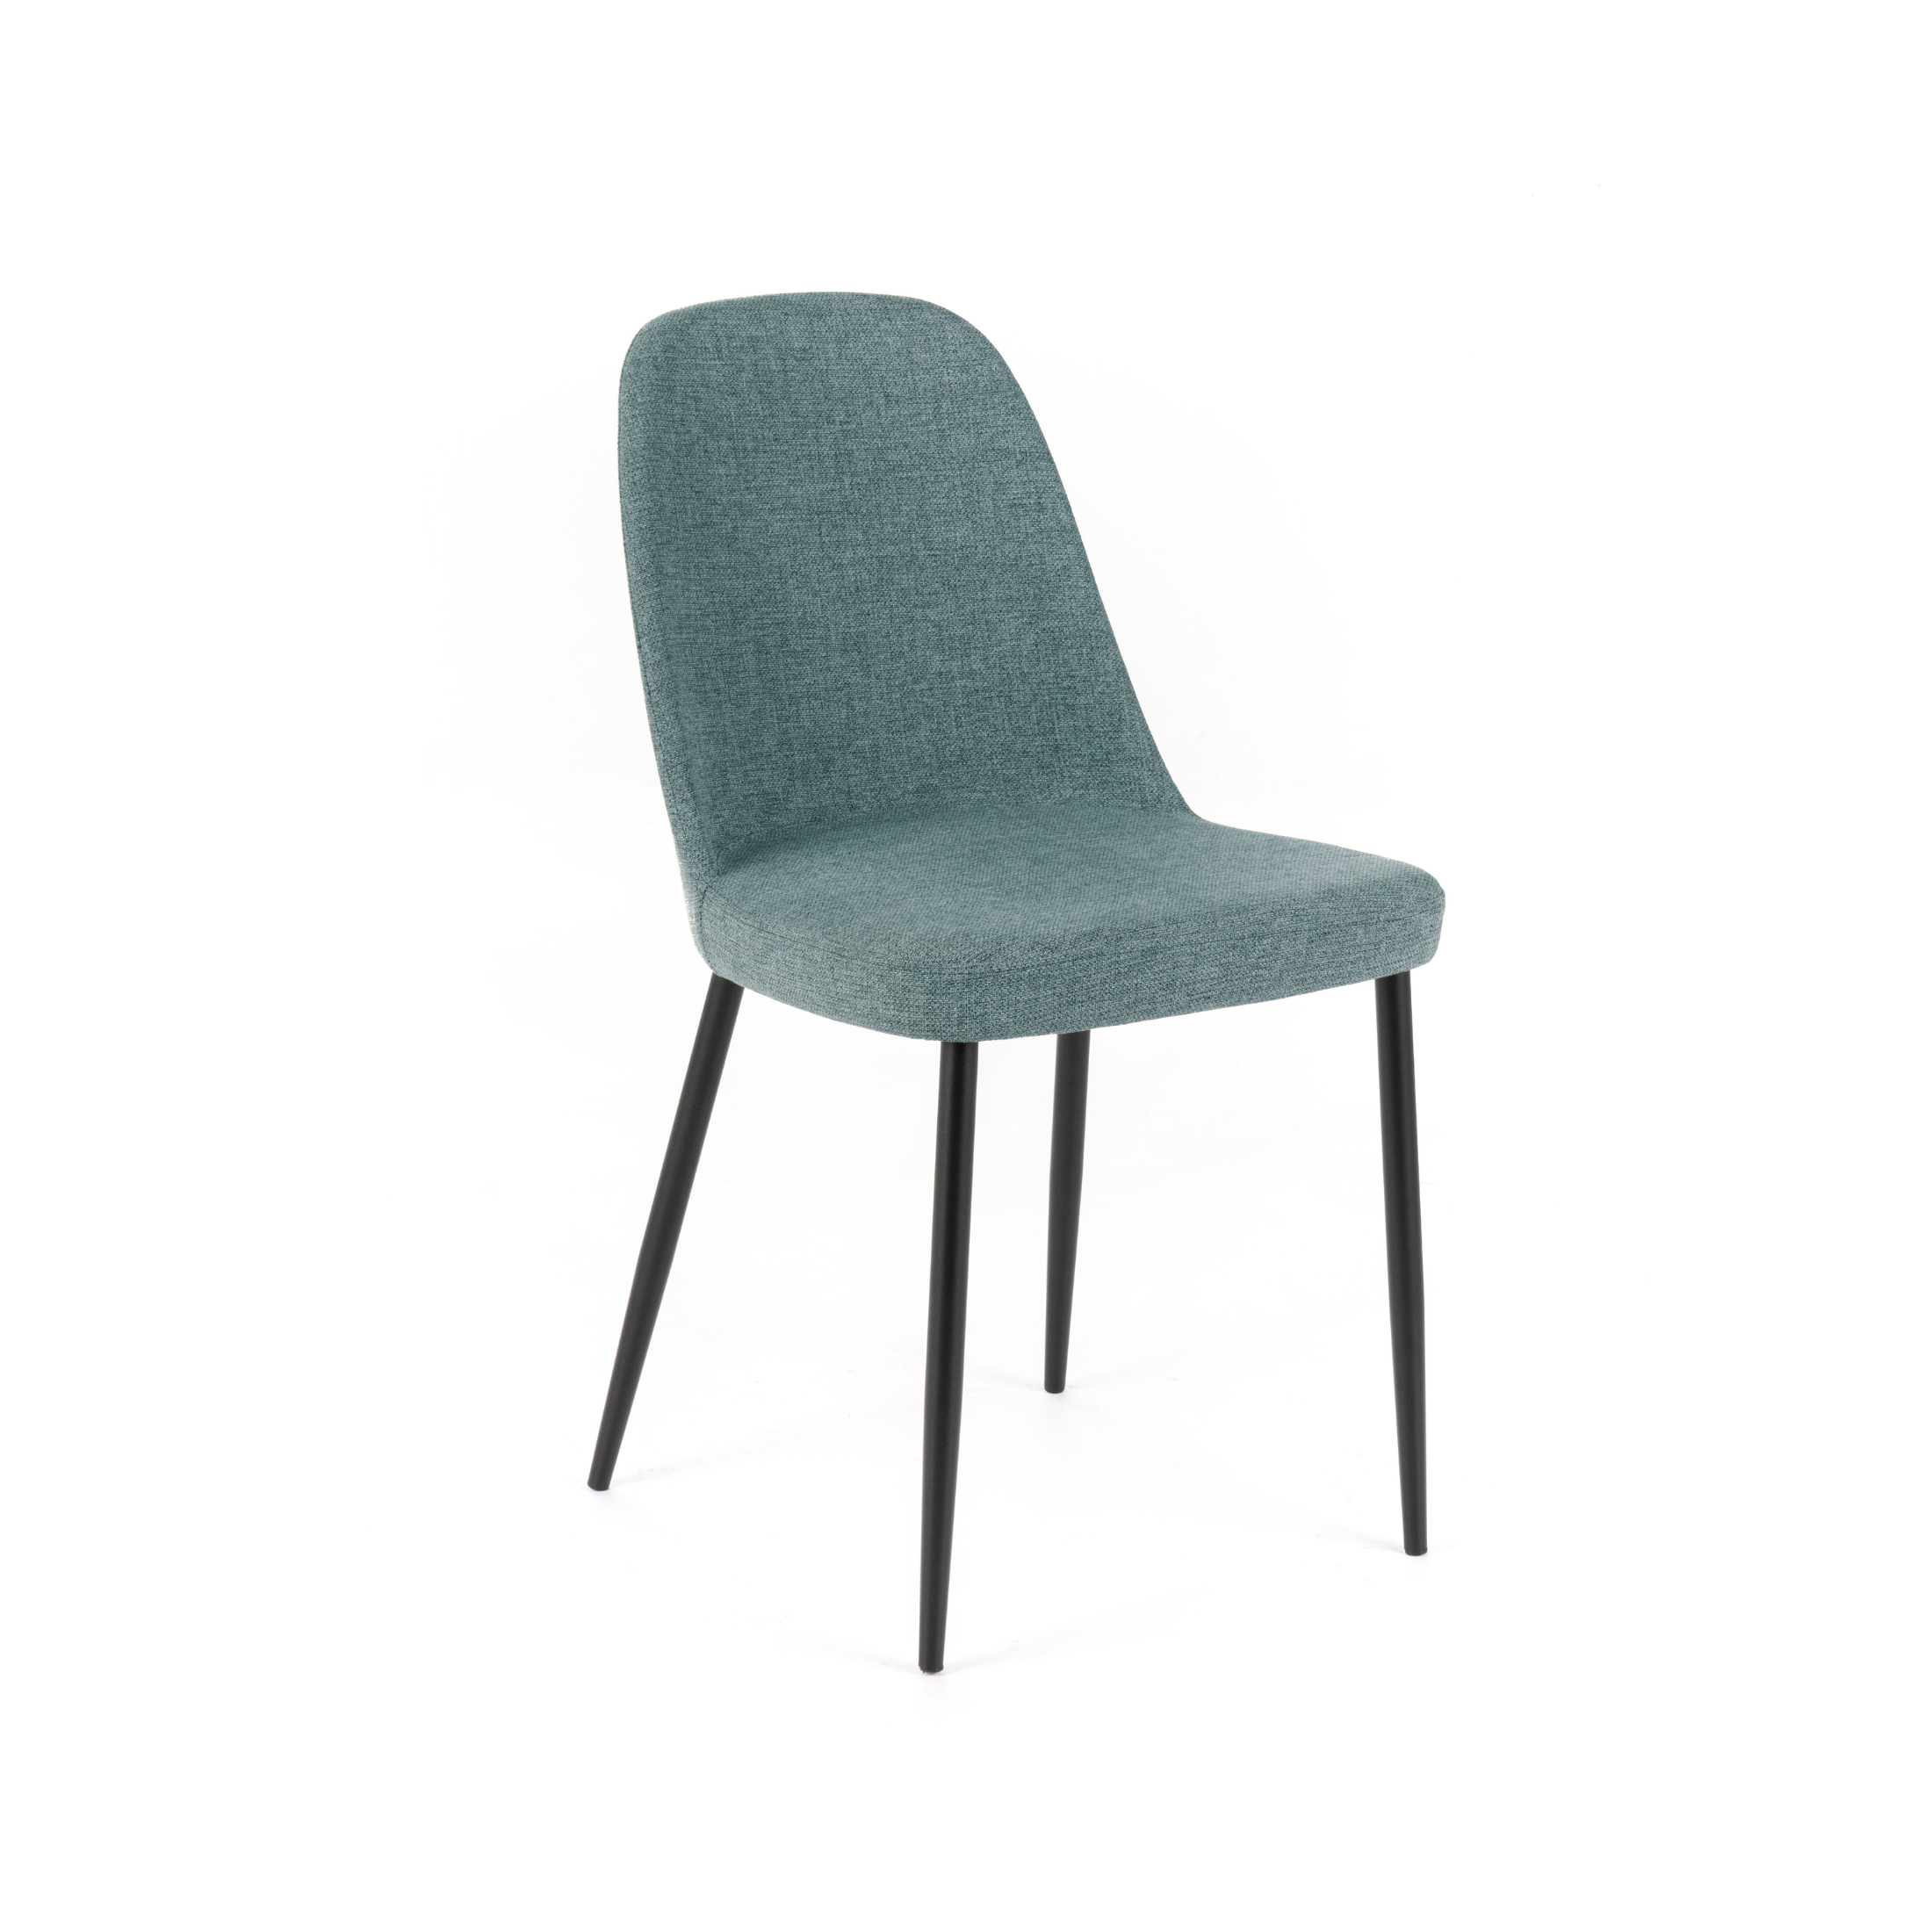 Silla de tela "Tamara", elegante sillón moderno 46x55 cm 85h